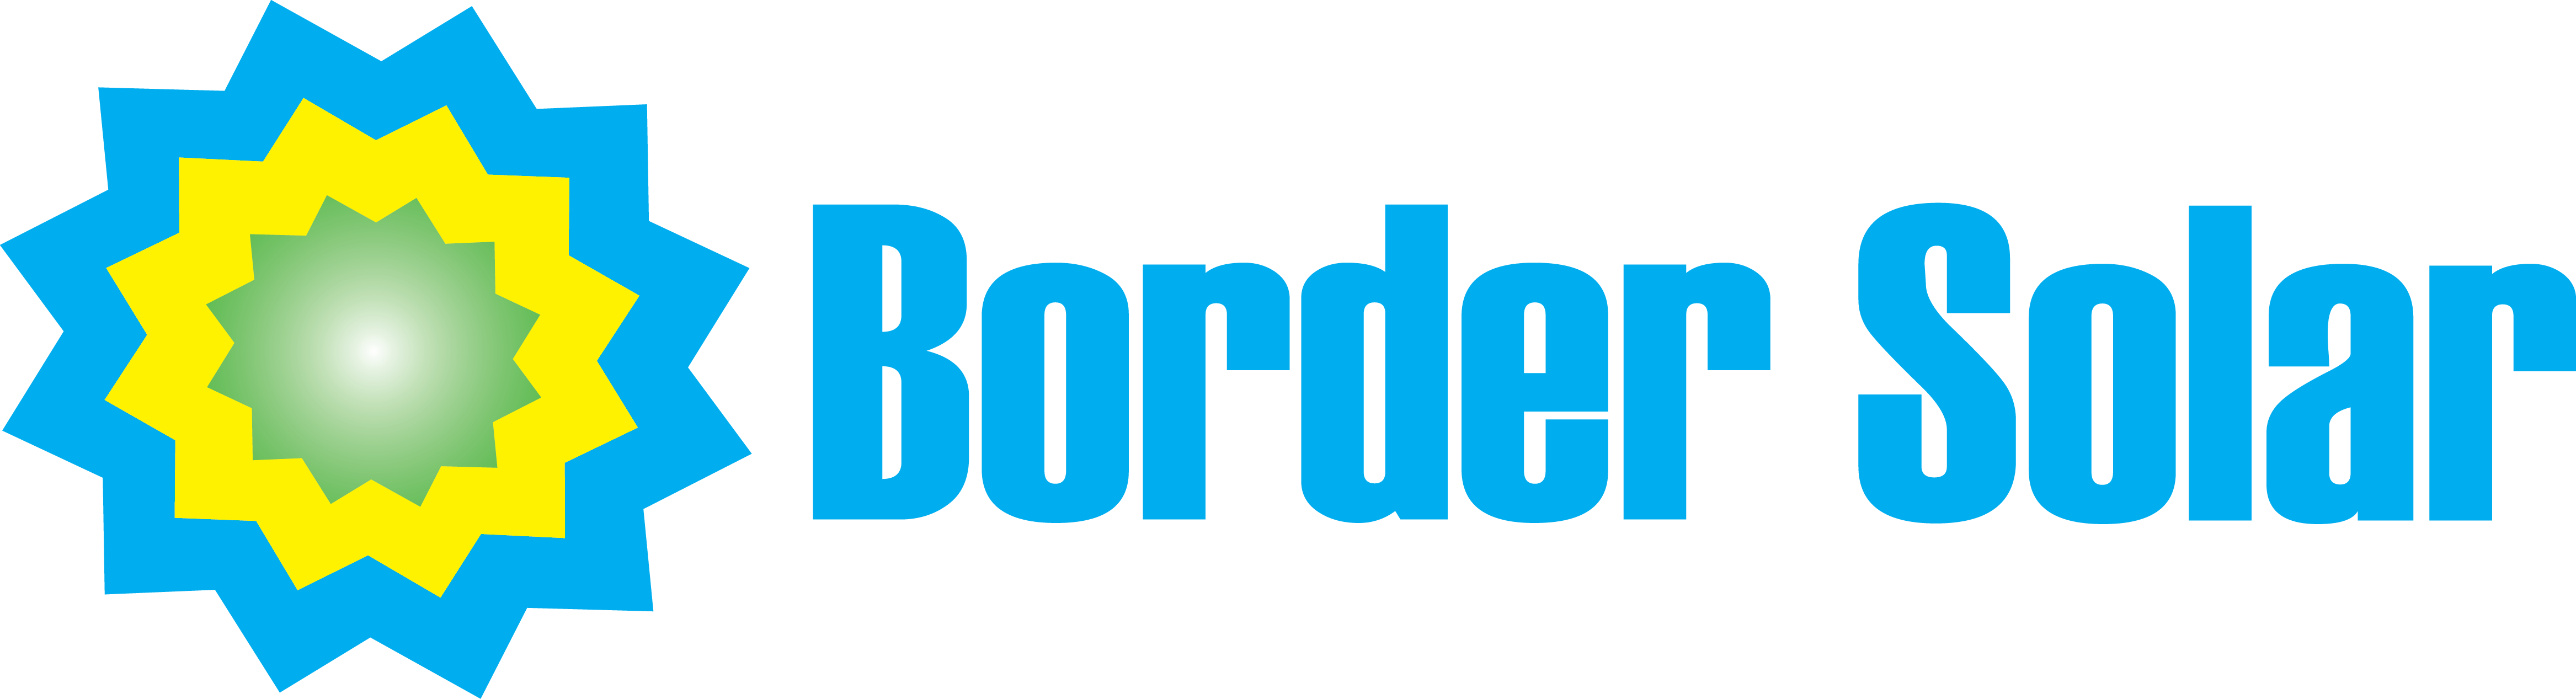 Border Solar